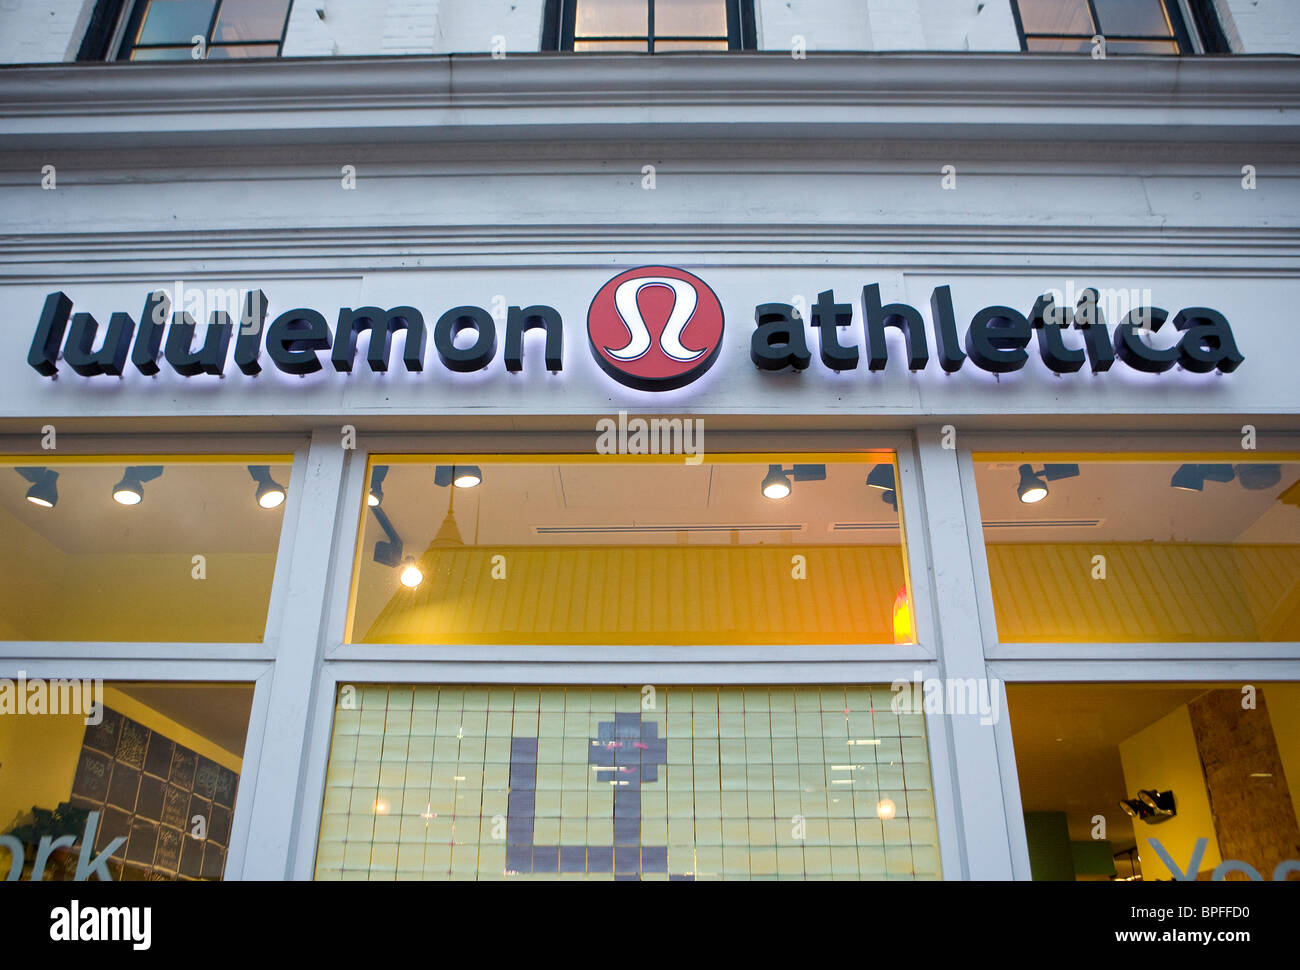 Un Lululemon Athletica store à Washington, DC. Banque D'Images